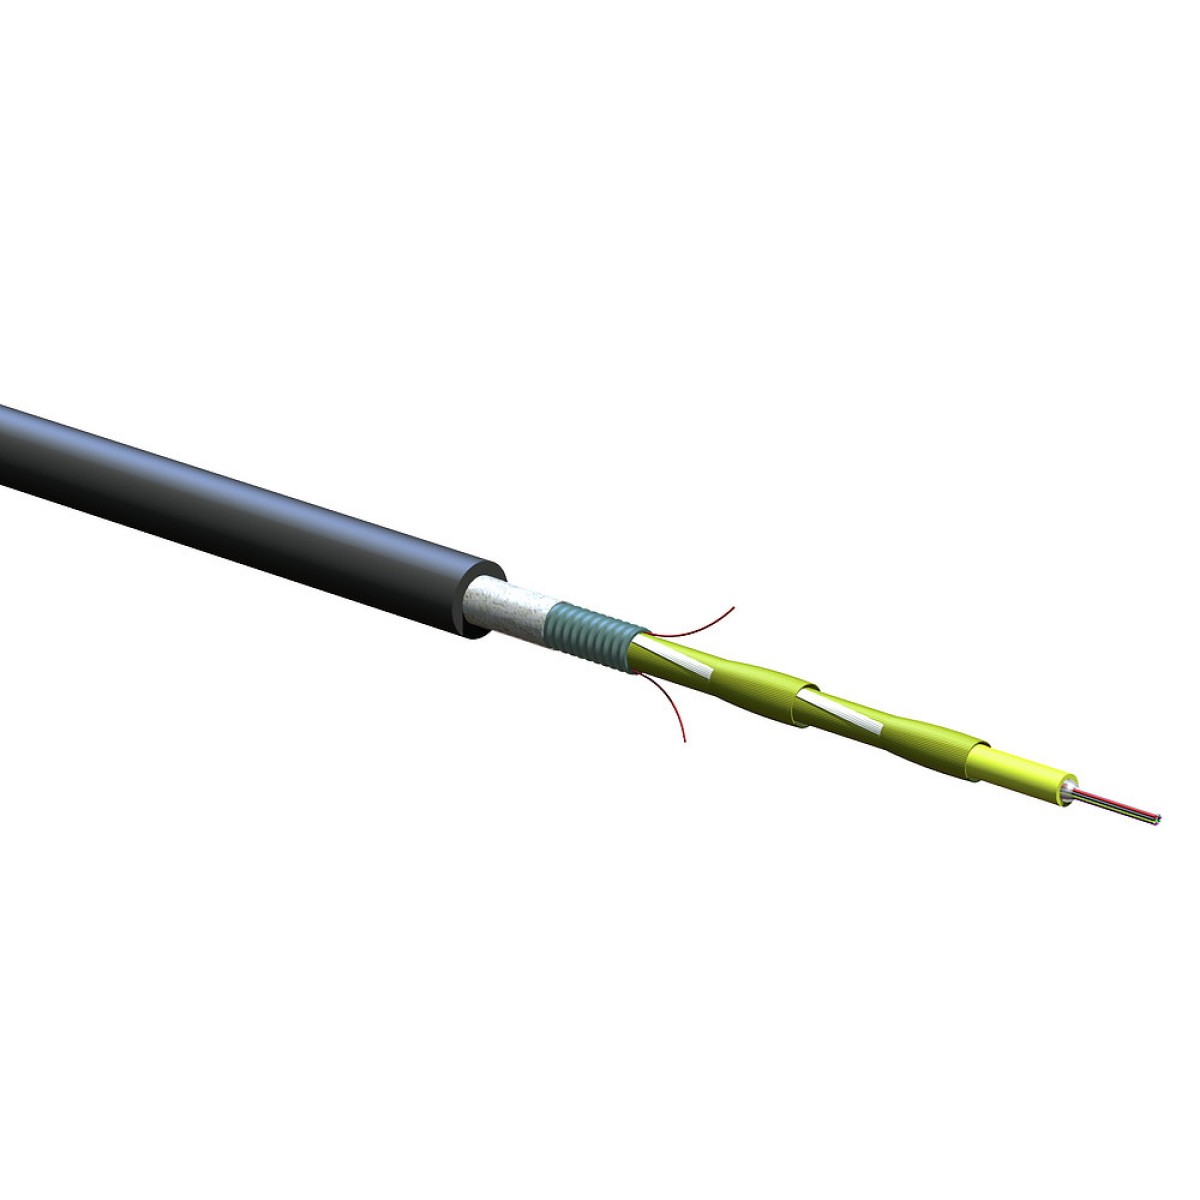 ВО кабель універсальний, U-DQ(ZN)(SR)H 8E9 SMF-28e+, гофрована броня, діелектричні підсилюючі елементи, LSZH/FRNC, Corning (008EEY-13122H2G) 256_256.jpg